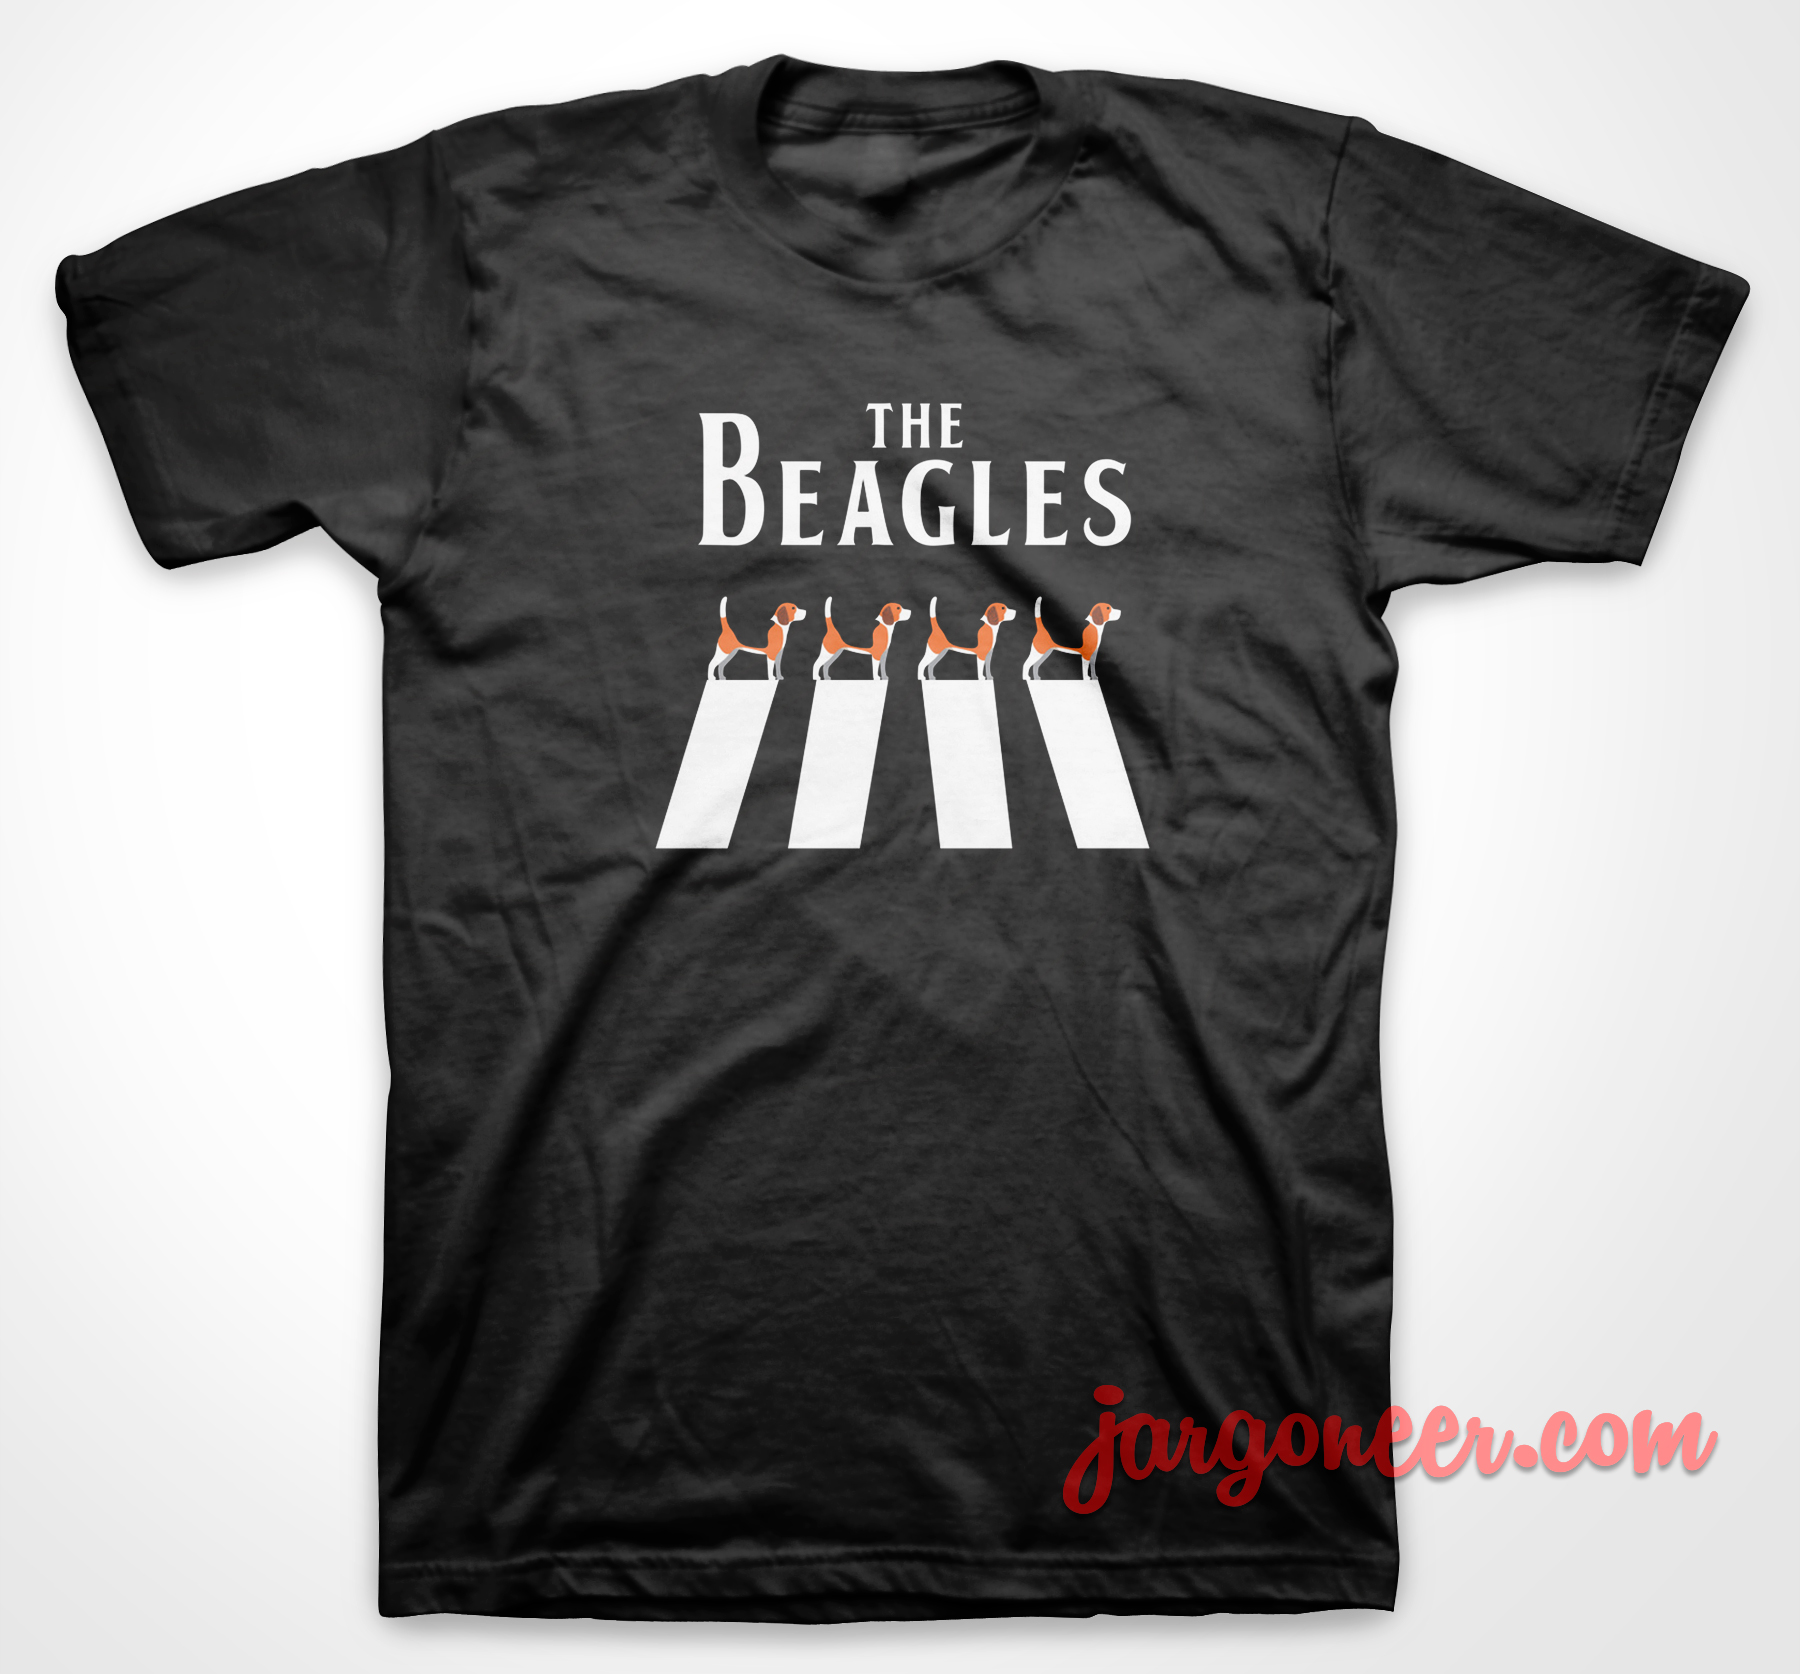 The Beagles Dog - Shop Unique Graphic Cool Shirt Designs